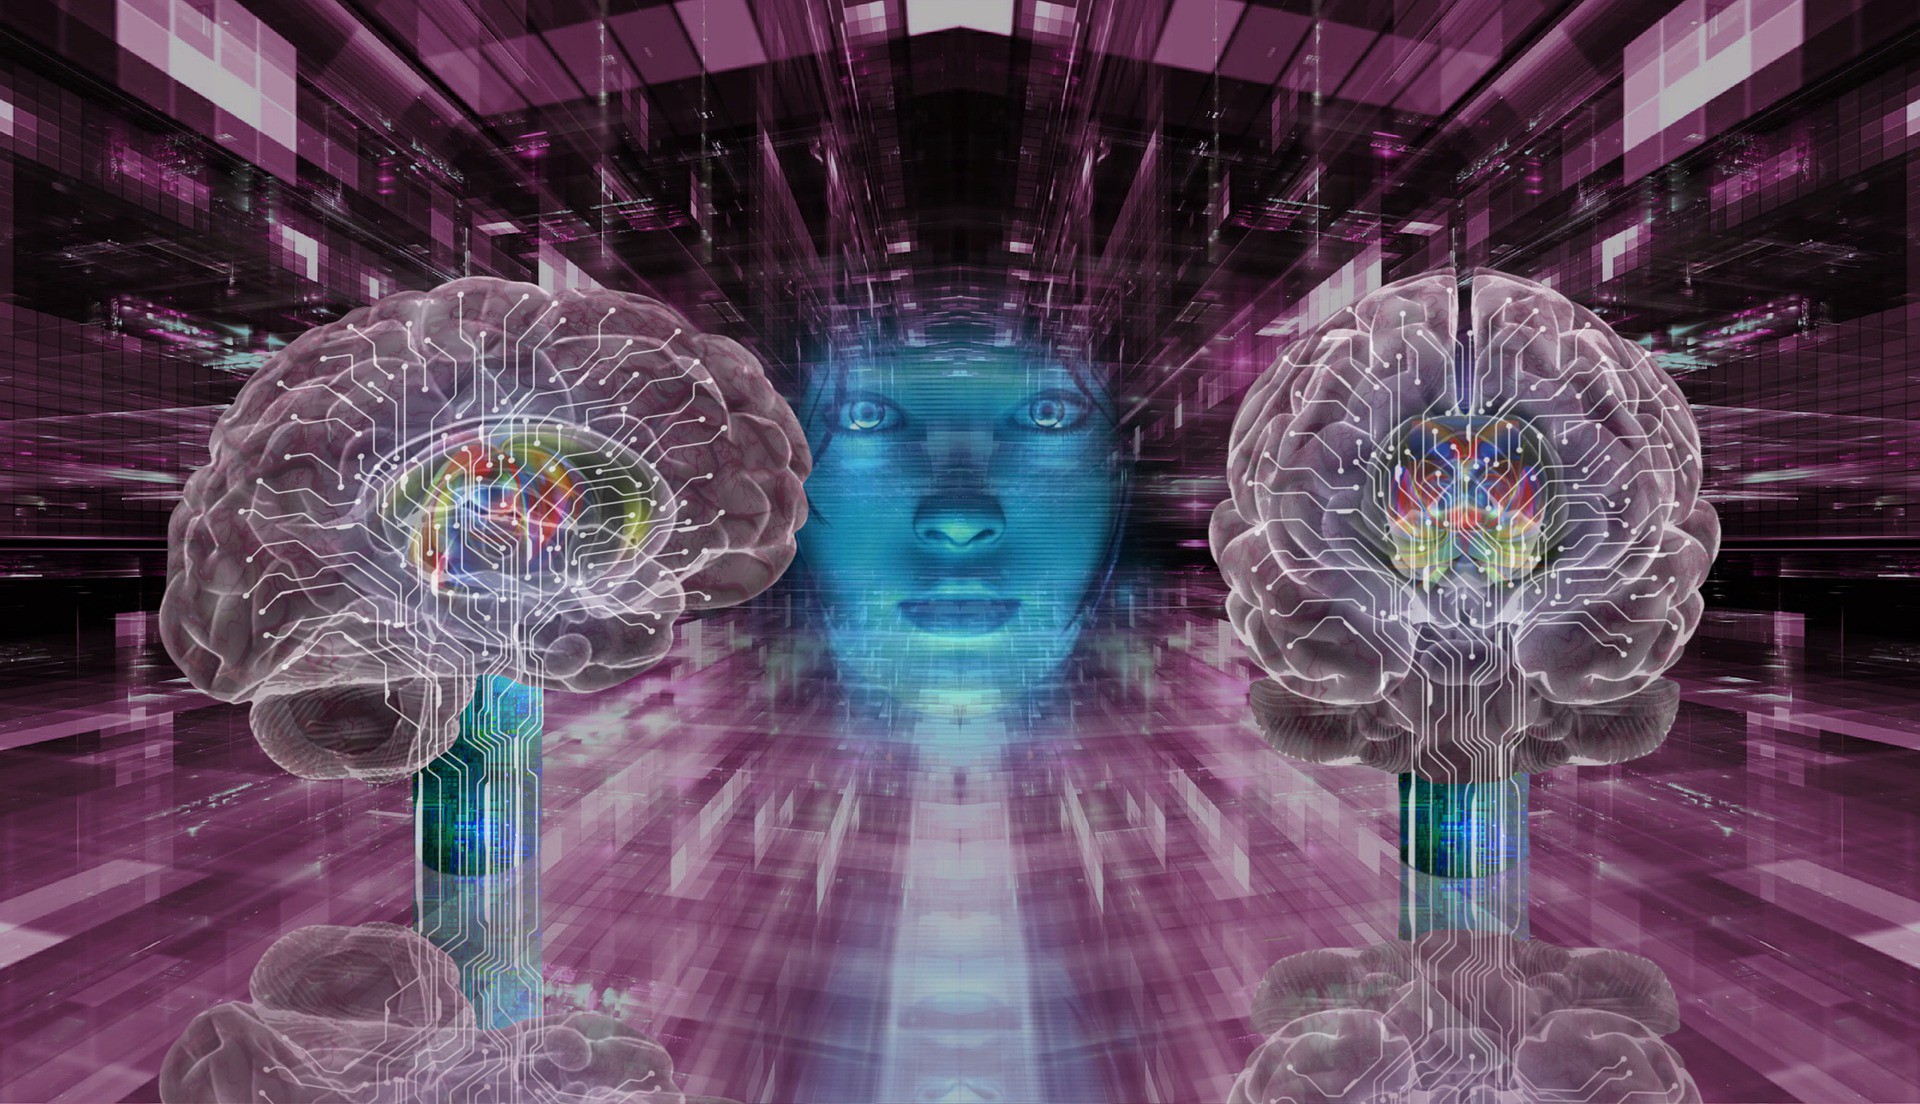 Neurociências da Visão visa desenvolver tecnologias úteis para serem utilizadas por profissionais da área da saúde